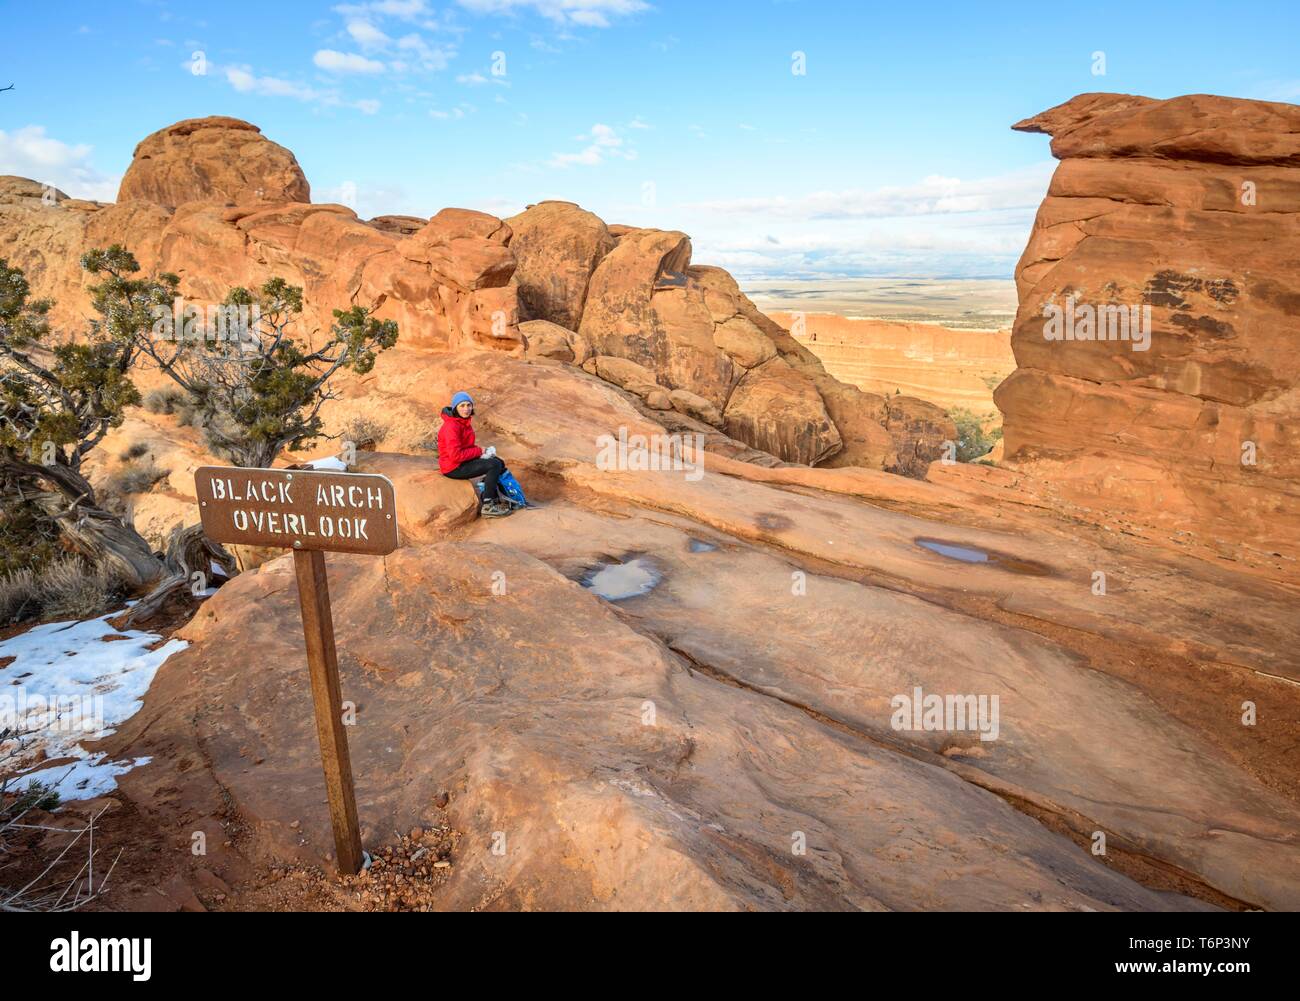 Touristische, junge Frau am Schwarzen Arch übersehen, Aussichtspunkt, Sandsteinfelsen, Devil's Garden Trail, Arches National Park, Utah, USA ruhen Stockfoto